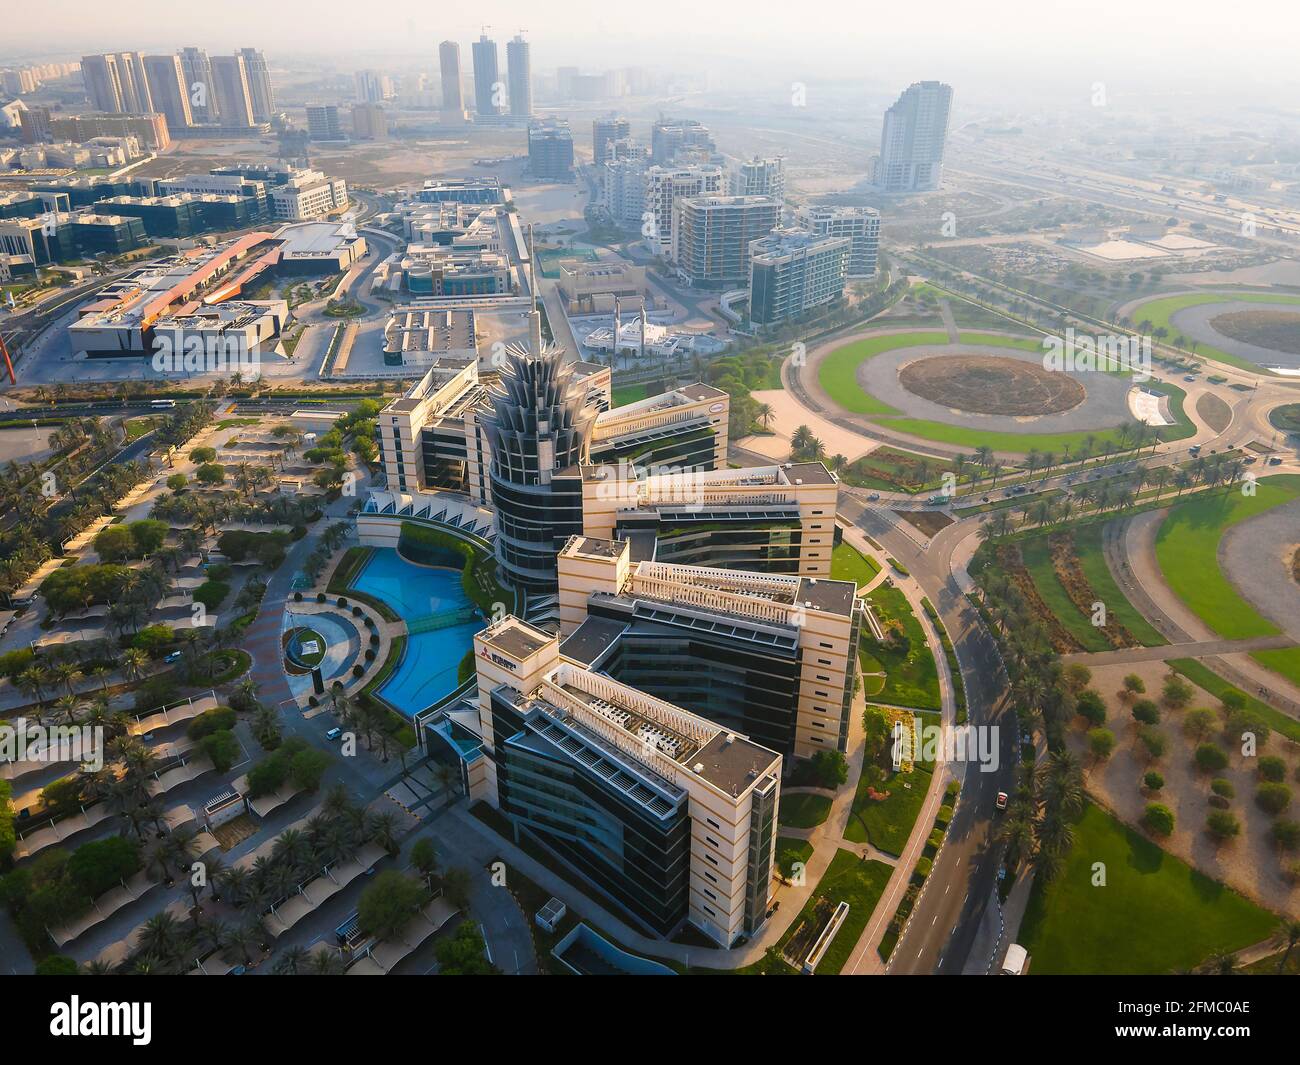 Dubai, Vereinigte Arabische Emirate - 5. Mai 2021: Technologiepark der Dubai Silicon Oasis, Wohngebiet und Freizone in Dubai Emirate Vororte in Vereinigte Arabische Emirate Stockfoto